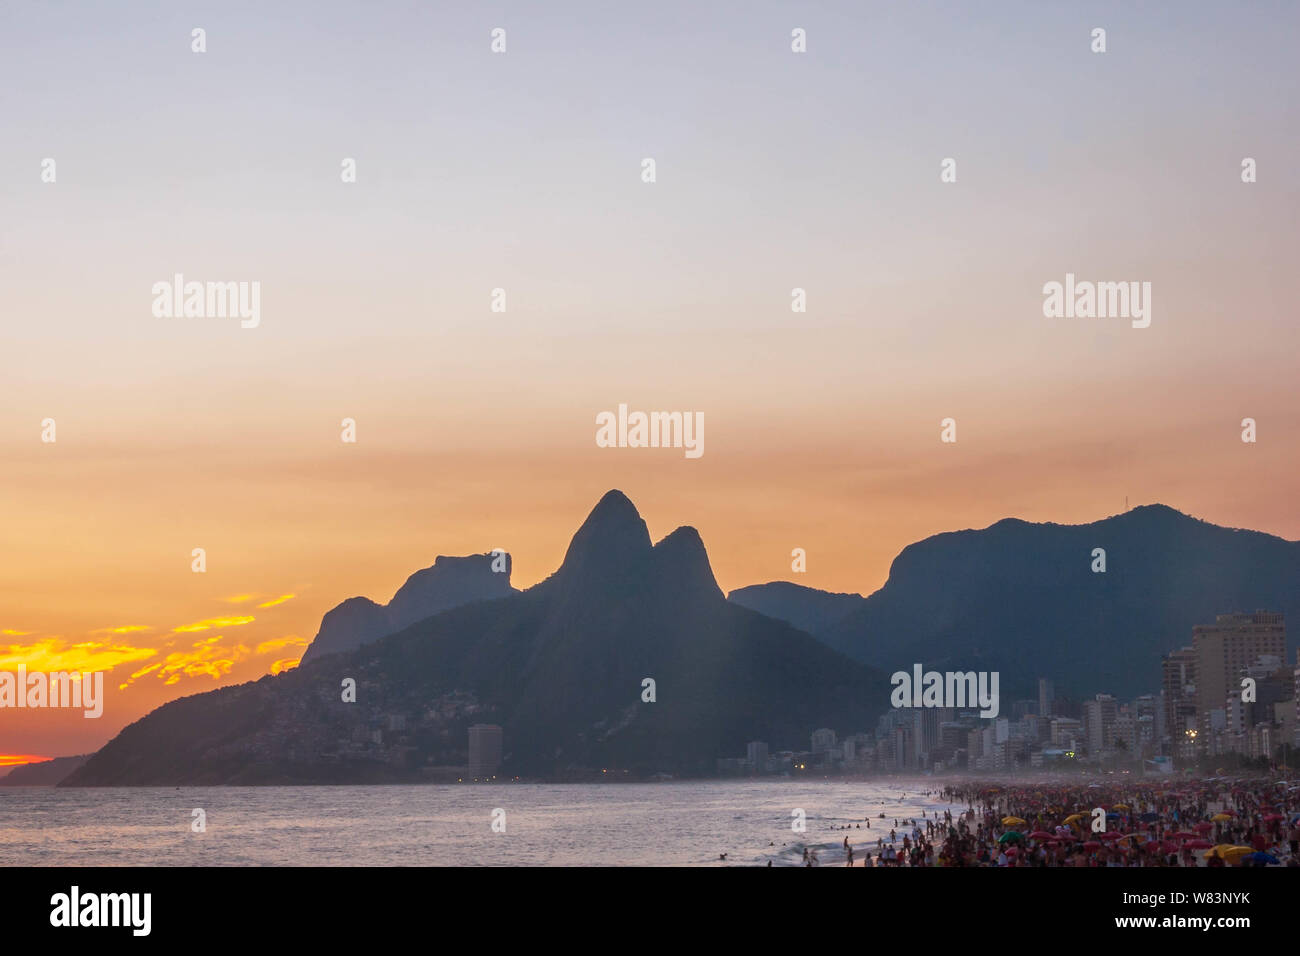 Incroyable coucher du soleil à Rio de Janeiro litoral vu de rock de l'Arpoador illustrant la plage d'Ipanema avec une foule sur le sable et la silhouette des montagnes Banque D'Images